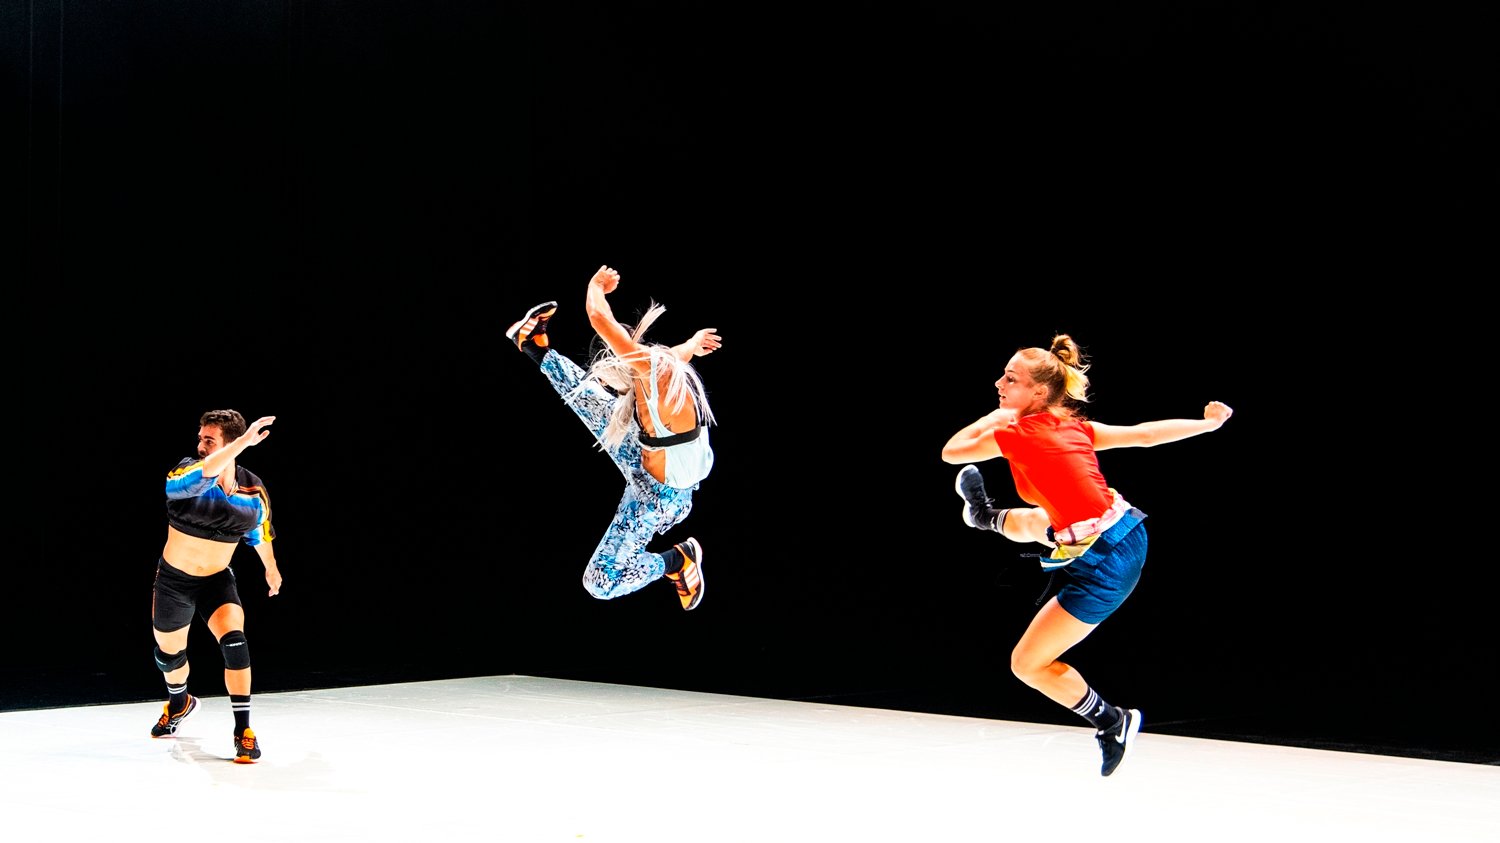 Corpos de Baile, uma incursão colorida e frenética do ballet na street dance, da autoria do coreógrafo Marco da Silva Ferreira